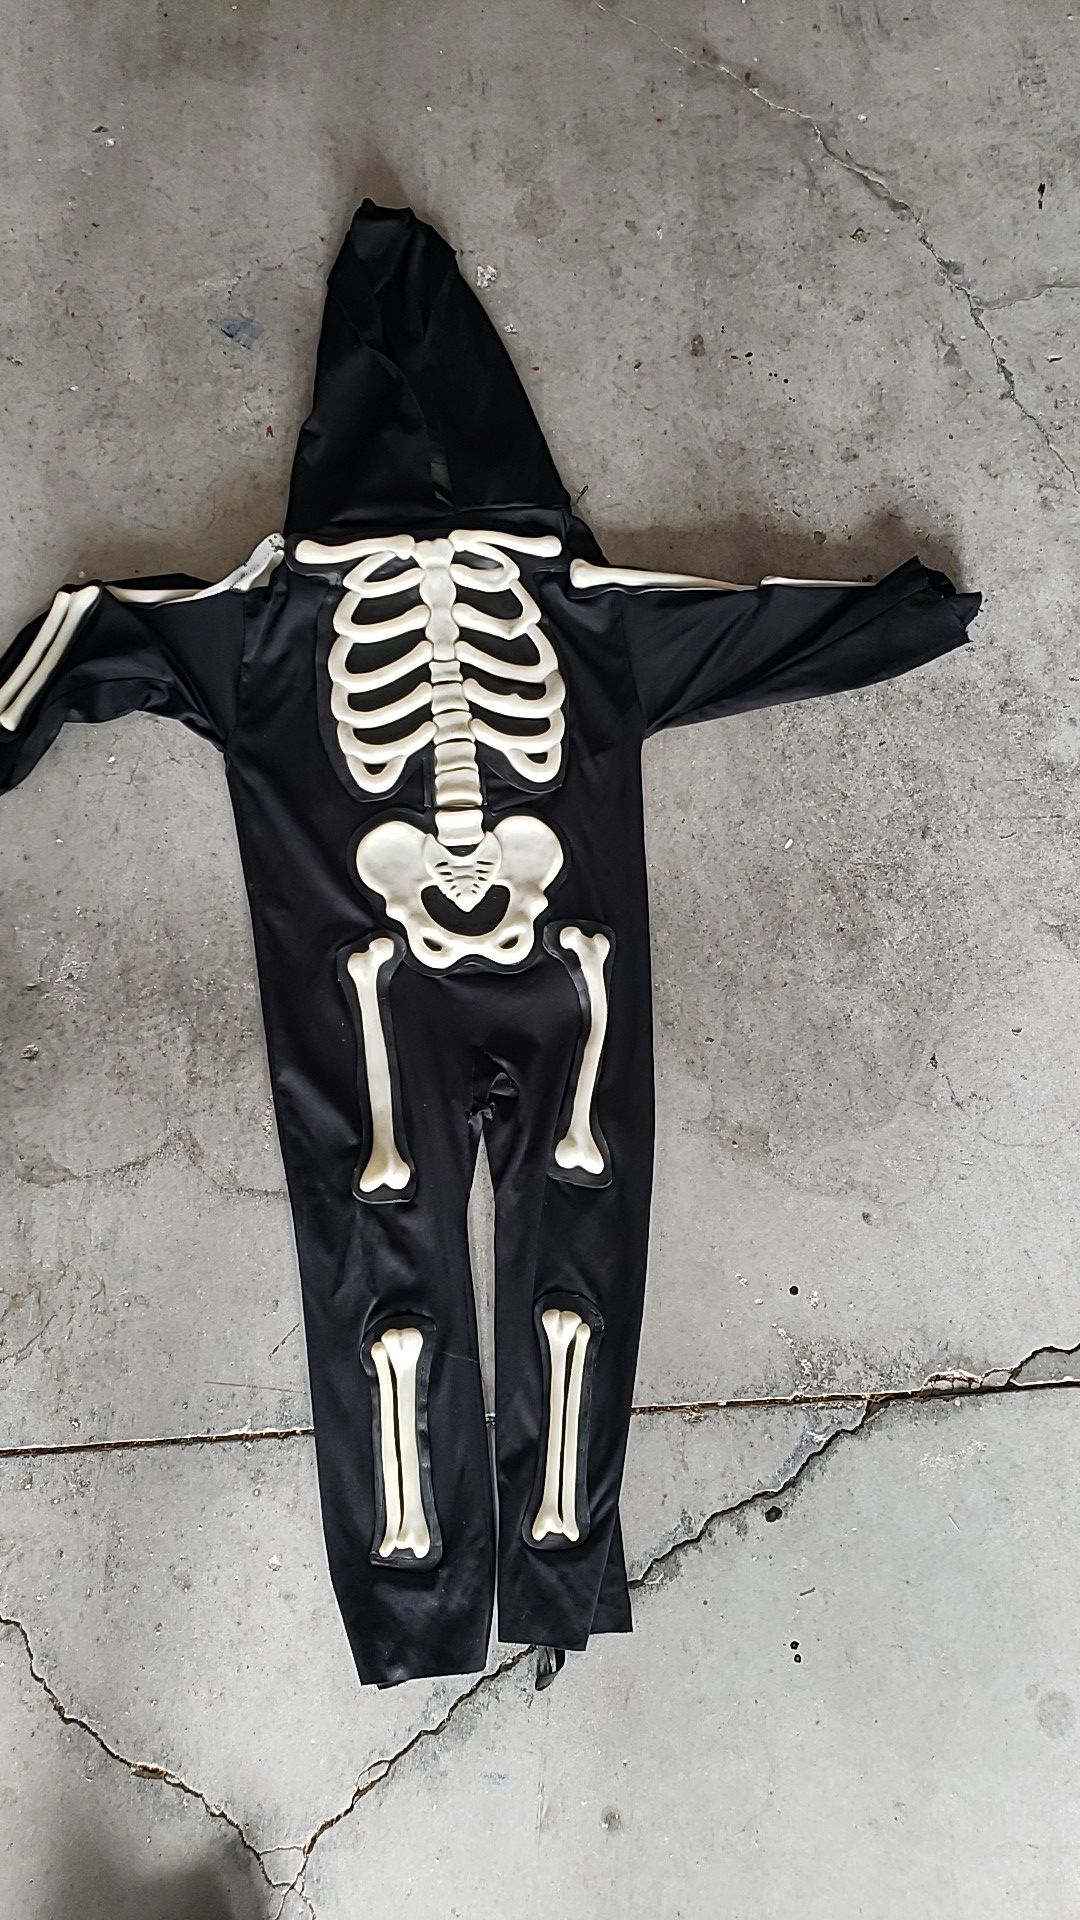 Kids skeleton costume fits 4-6